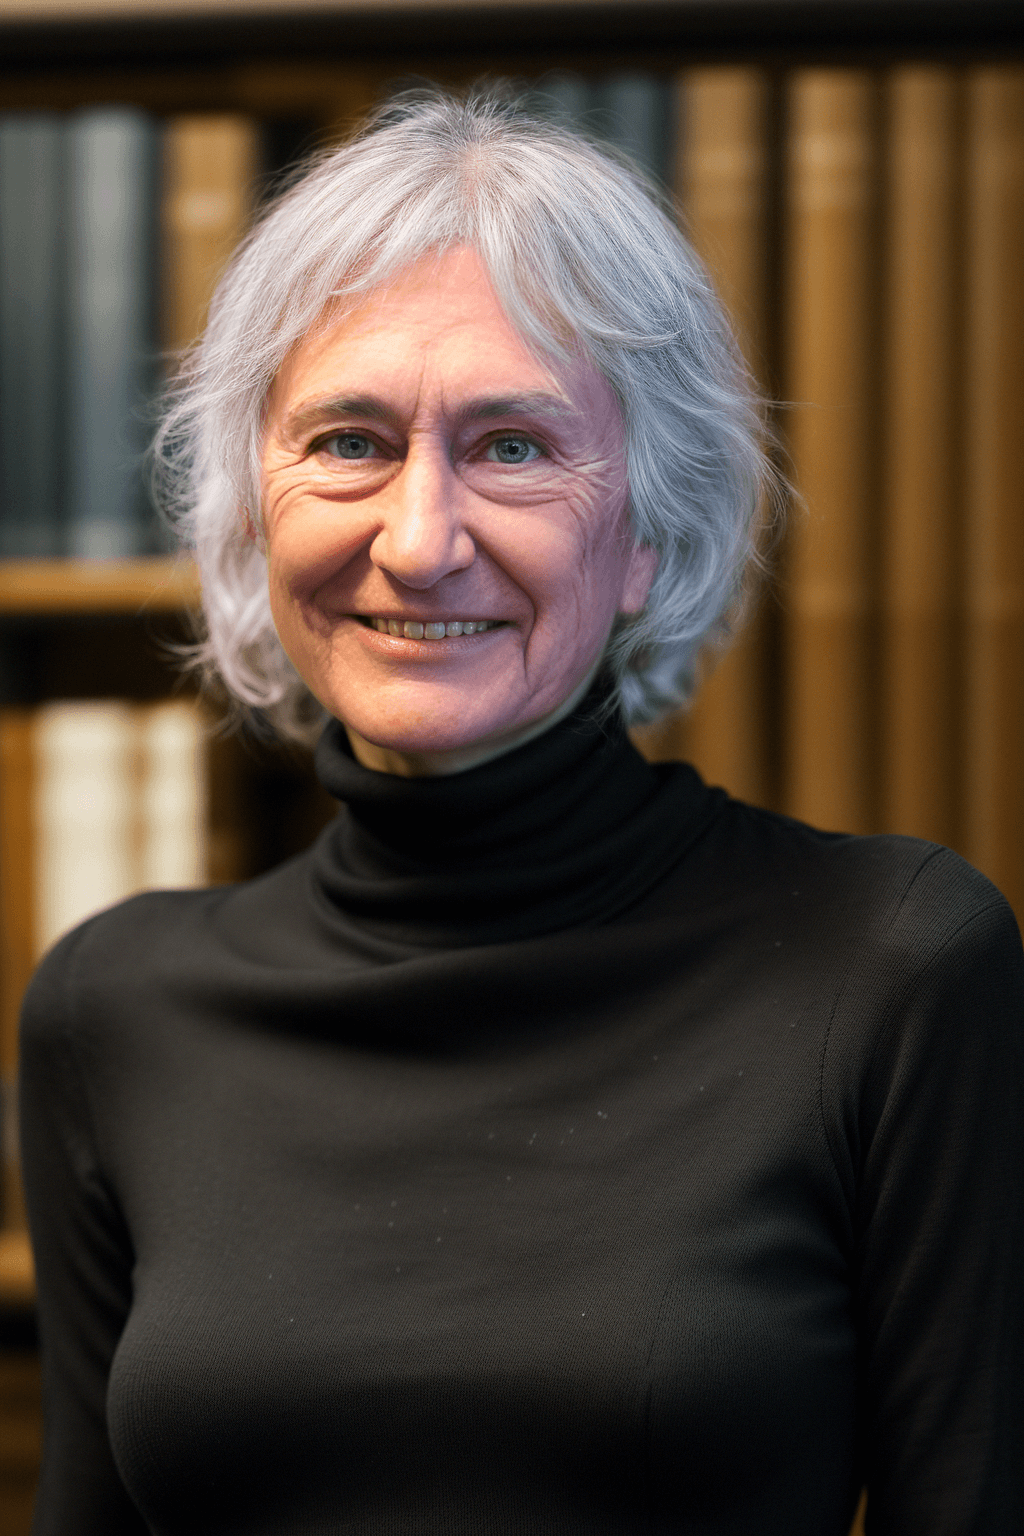 Author Sarah P. Blanchard